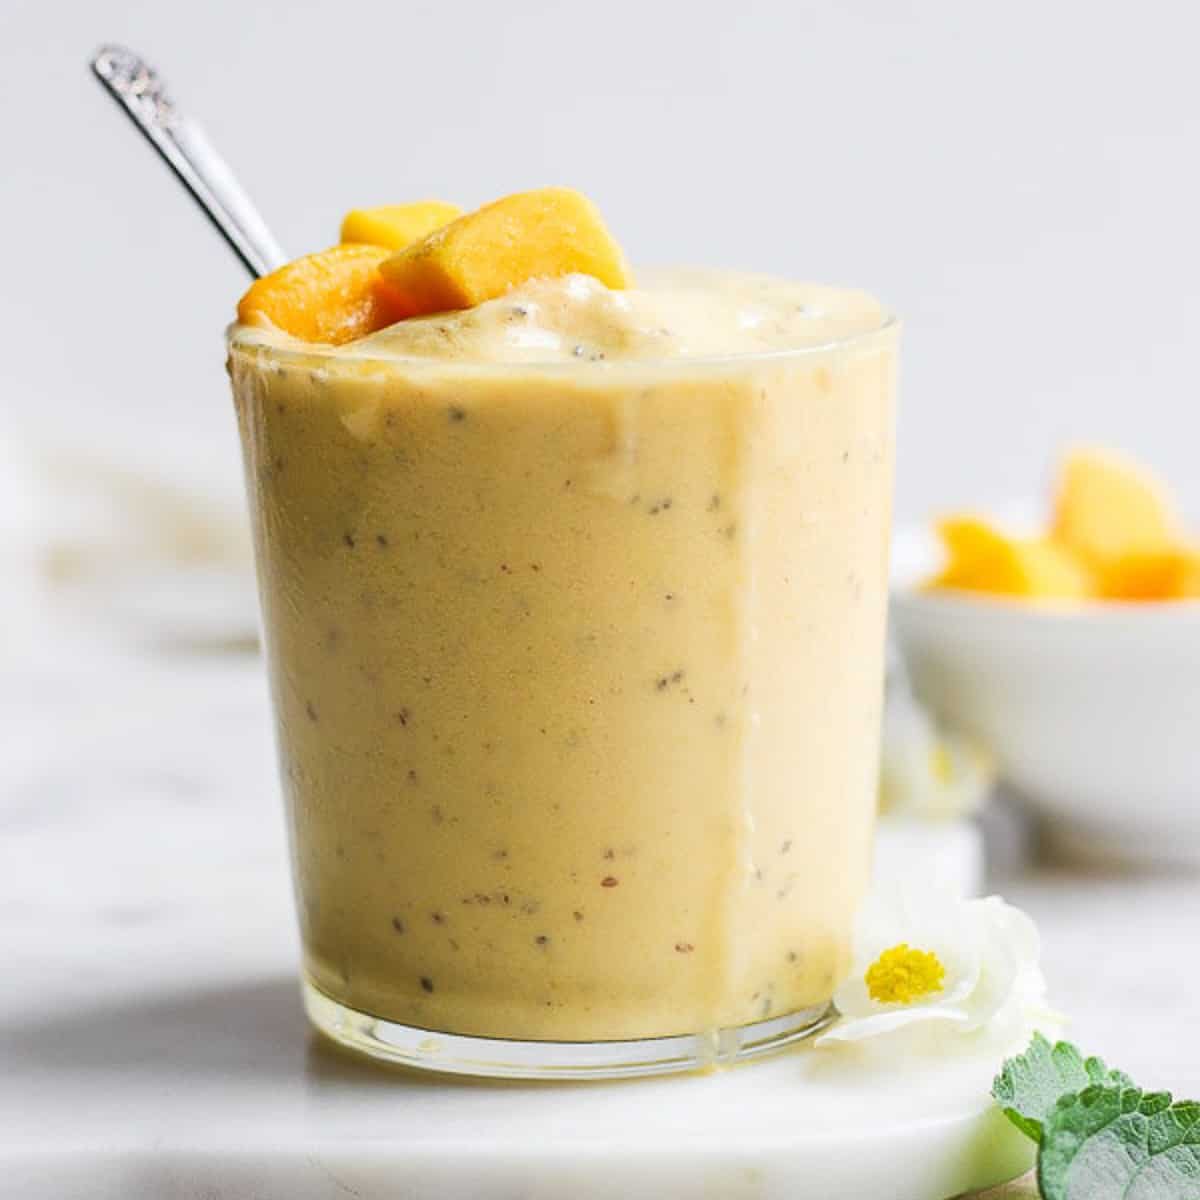 Recipe for a mango smoothie.